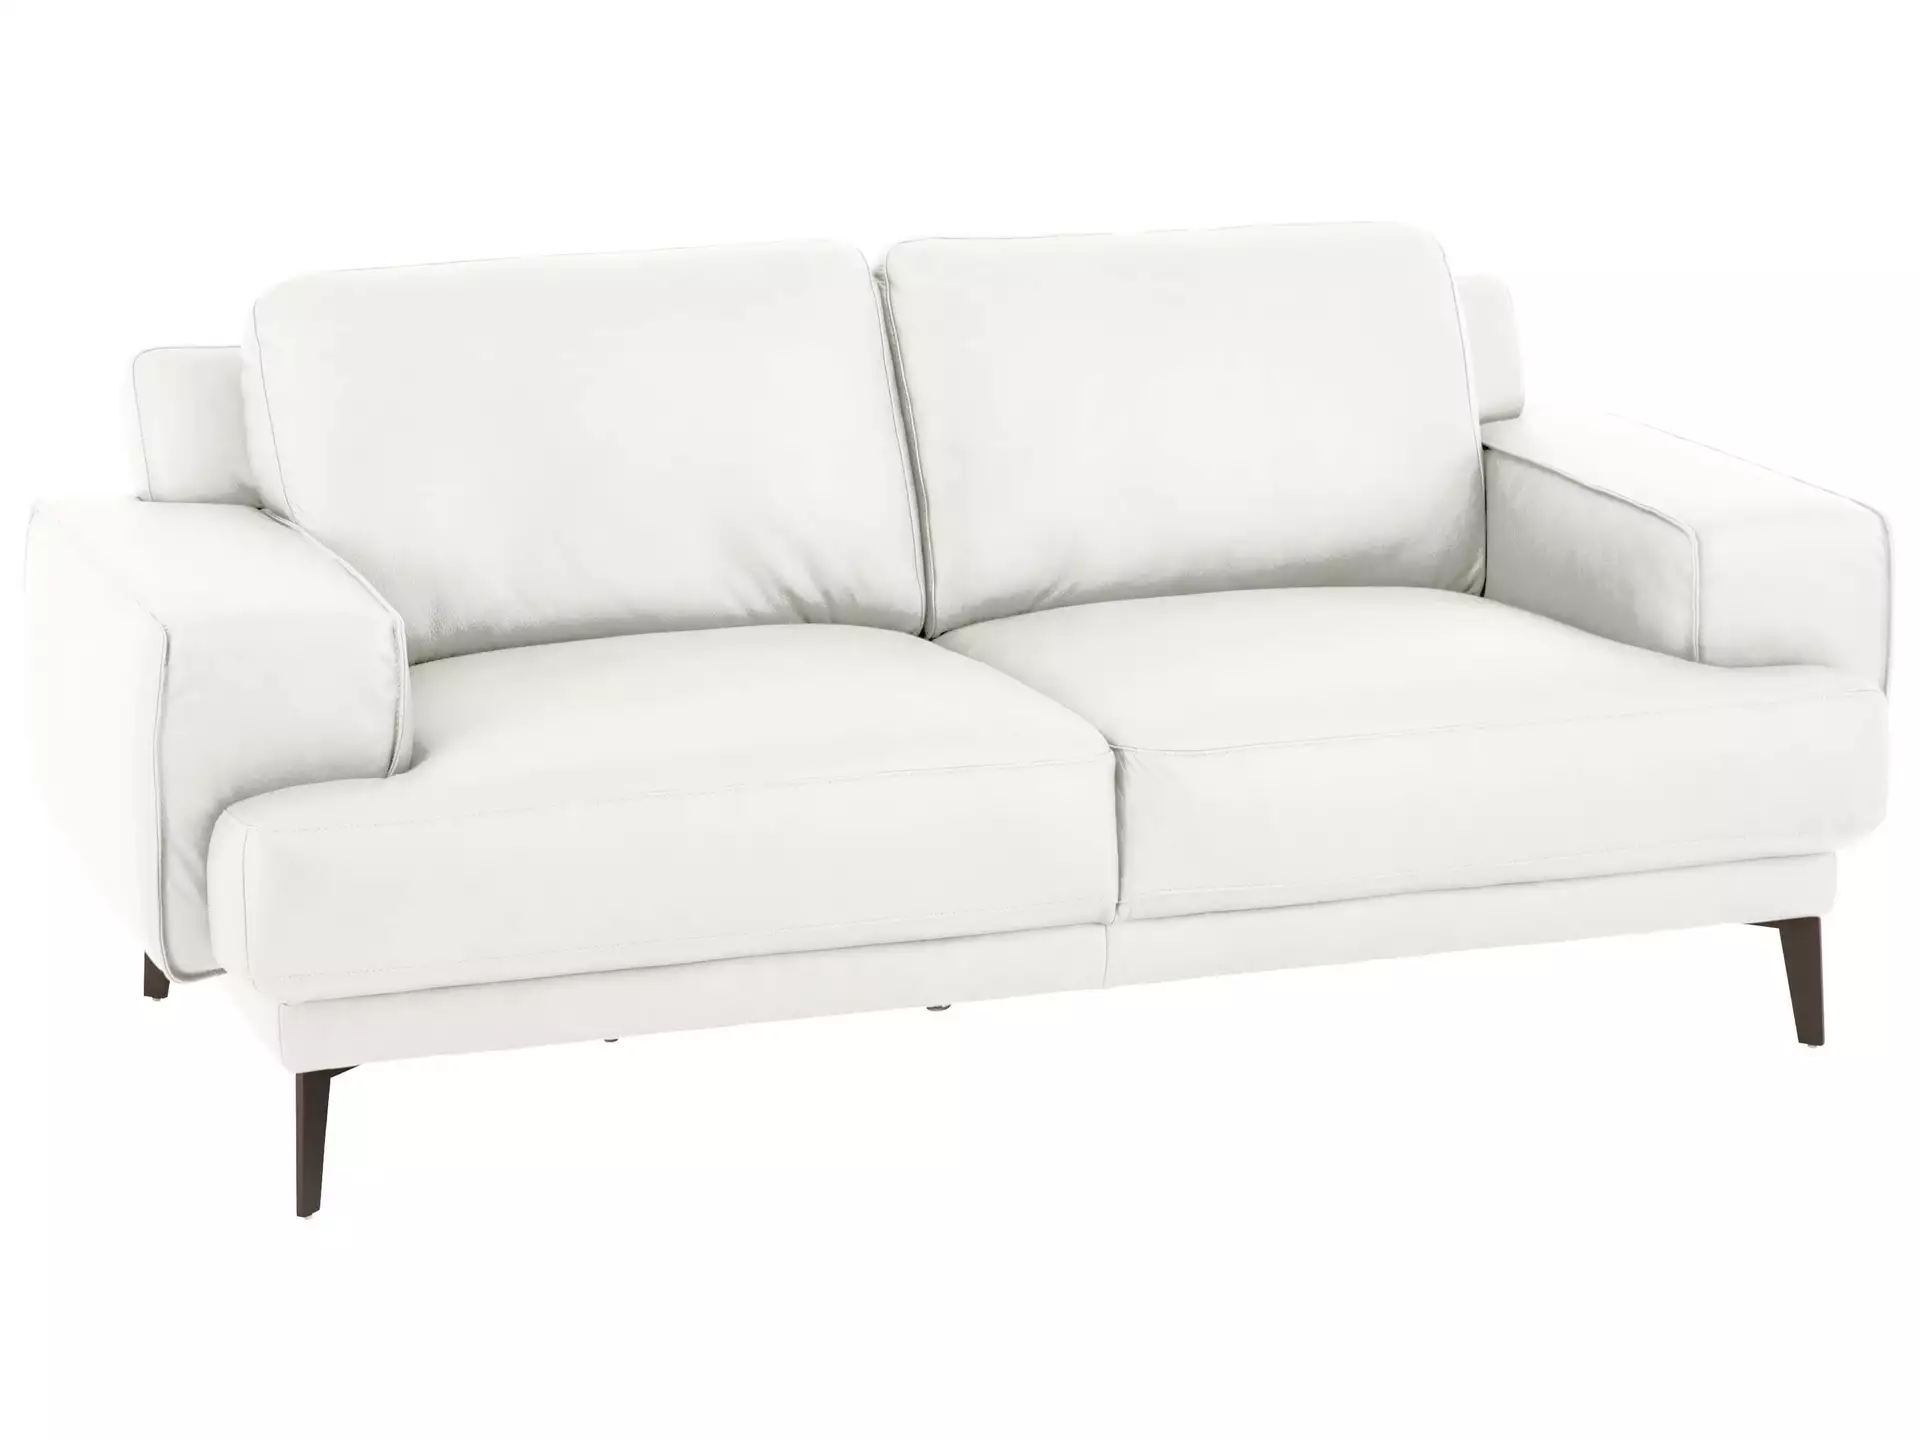 Sofa Foscaari Basic B: 193 cm Schillig Willi / Farbe: White / Material: Leder Basic